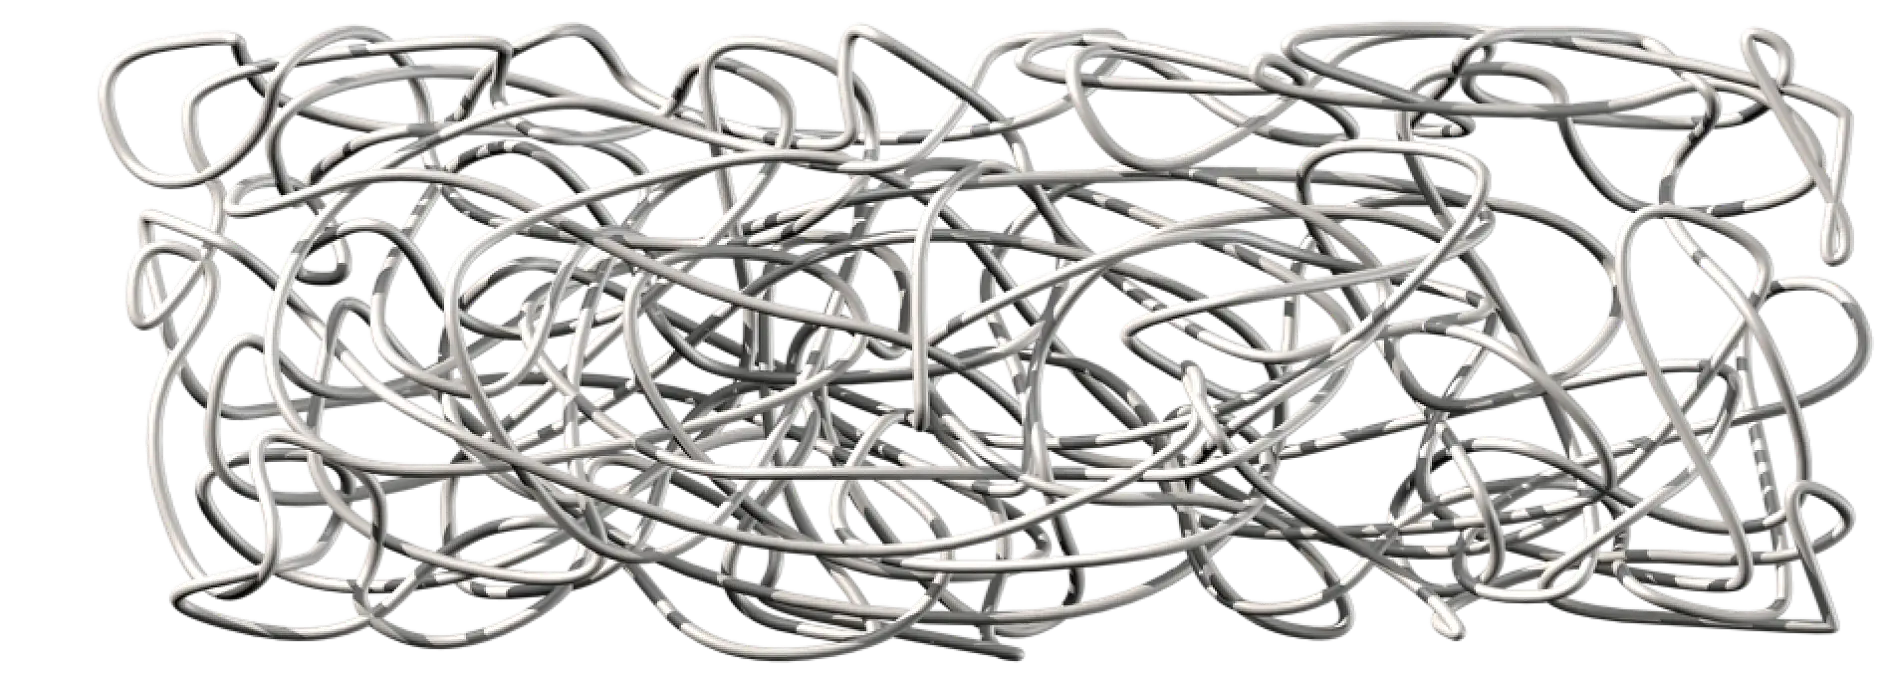 Naturligt gummi består af ekstremt lange polymerkæder, der er sammenfiltrede, ikke forbundet